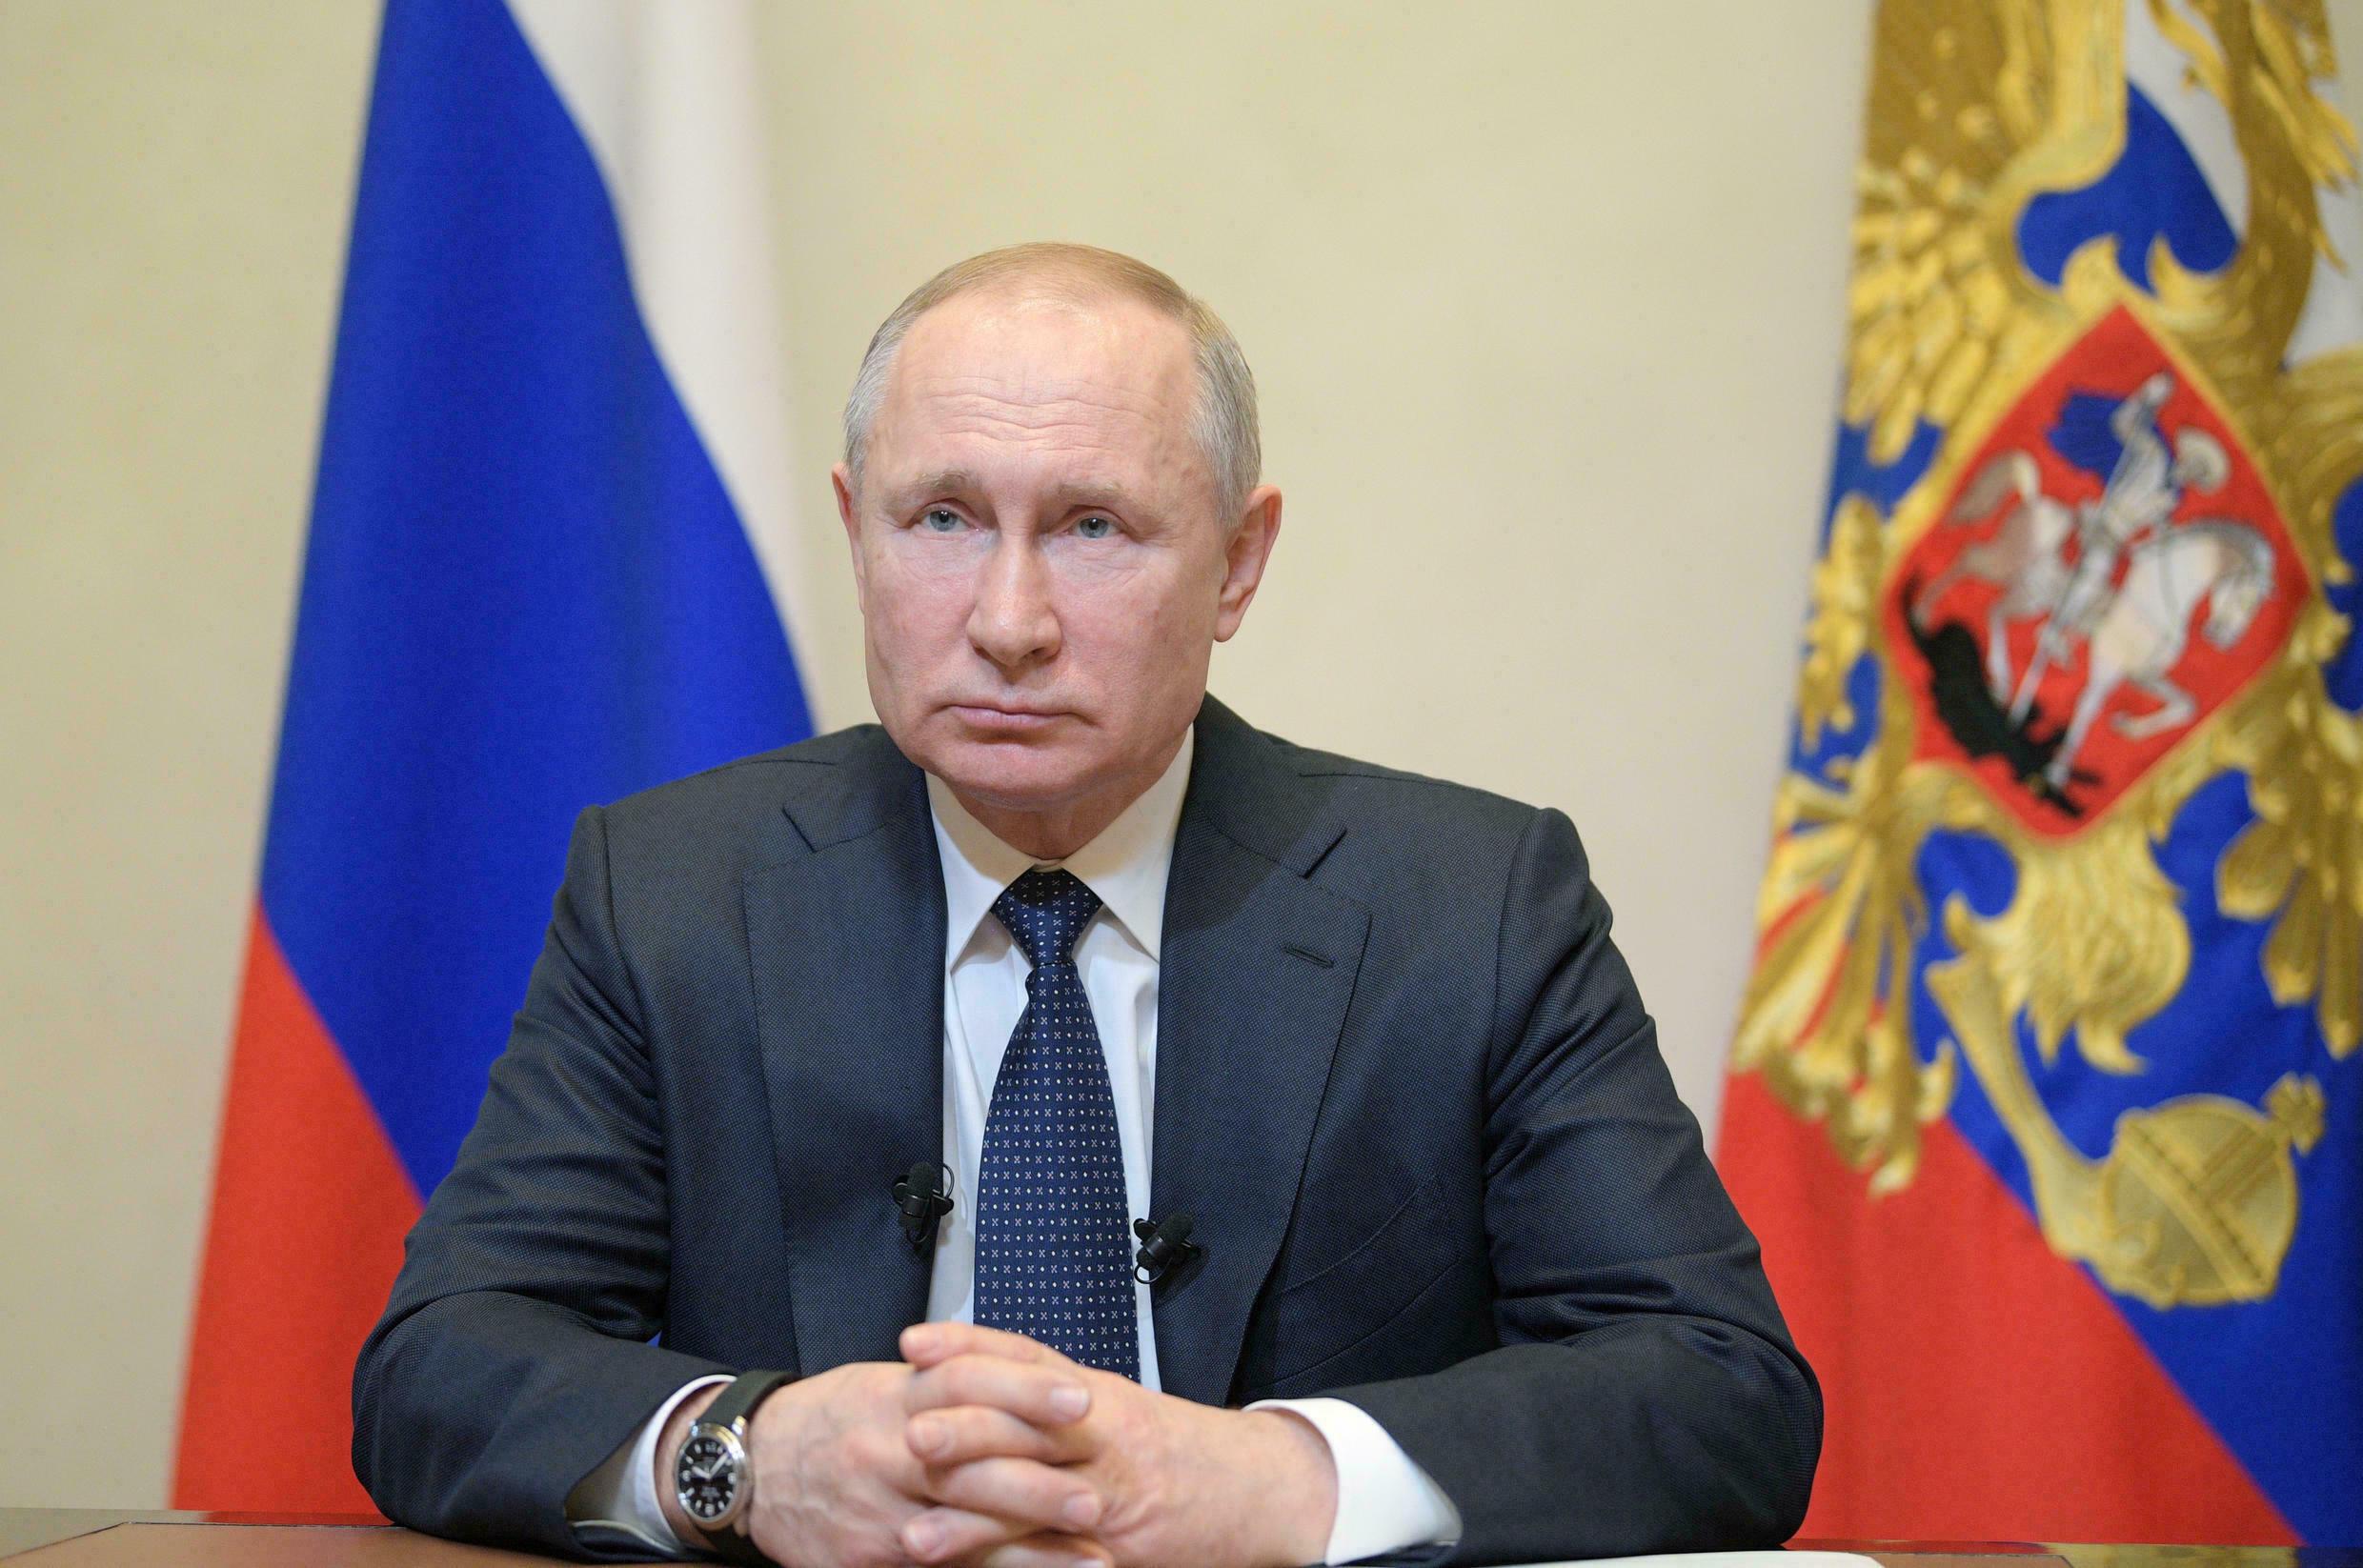 Putin critica avance en derechos de homosexuales y transgénero